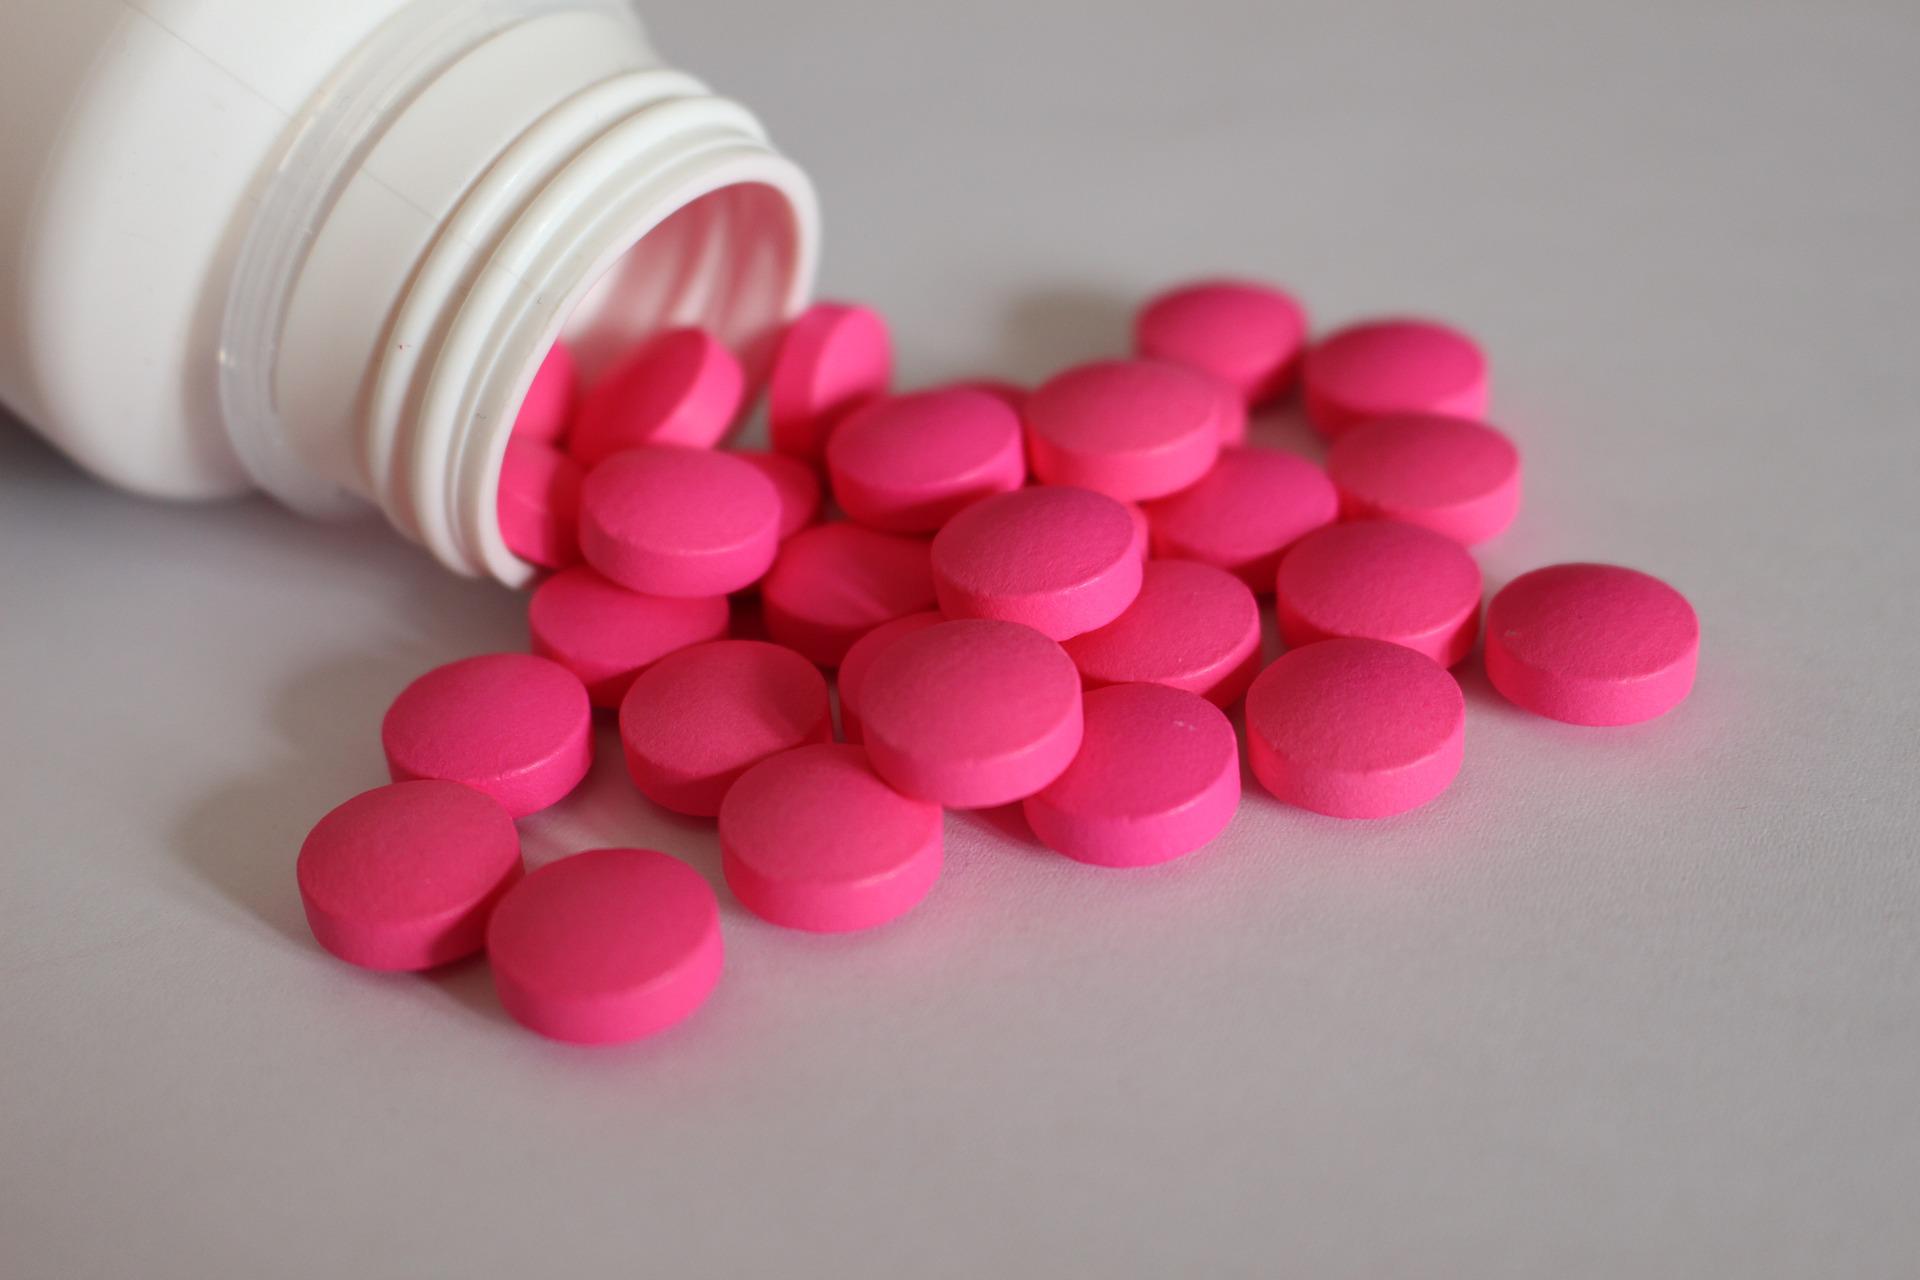 Pretjerana uporaba ibuprofena može uzrokovati 4 ozbiljna zdravstvena problema